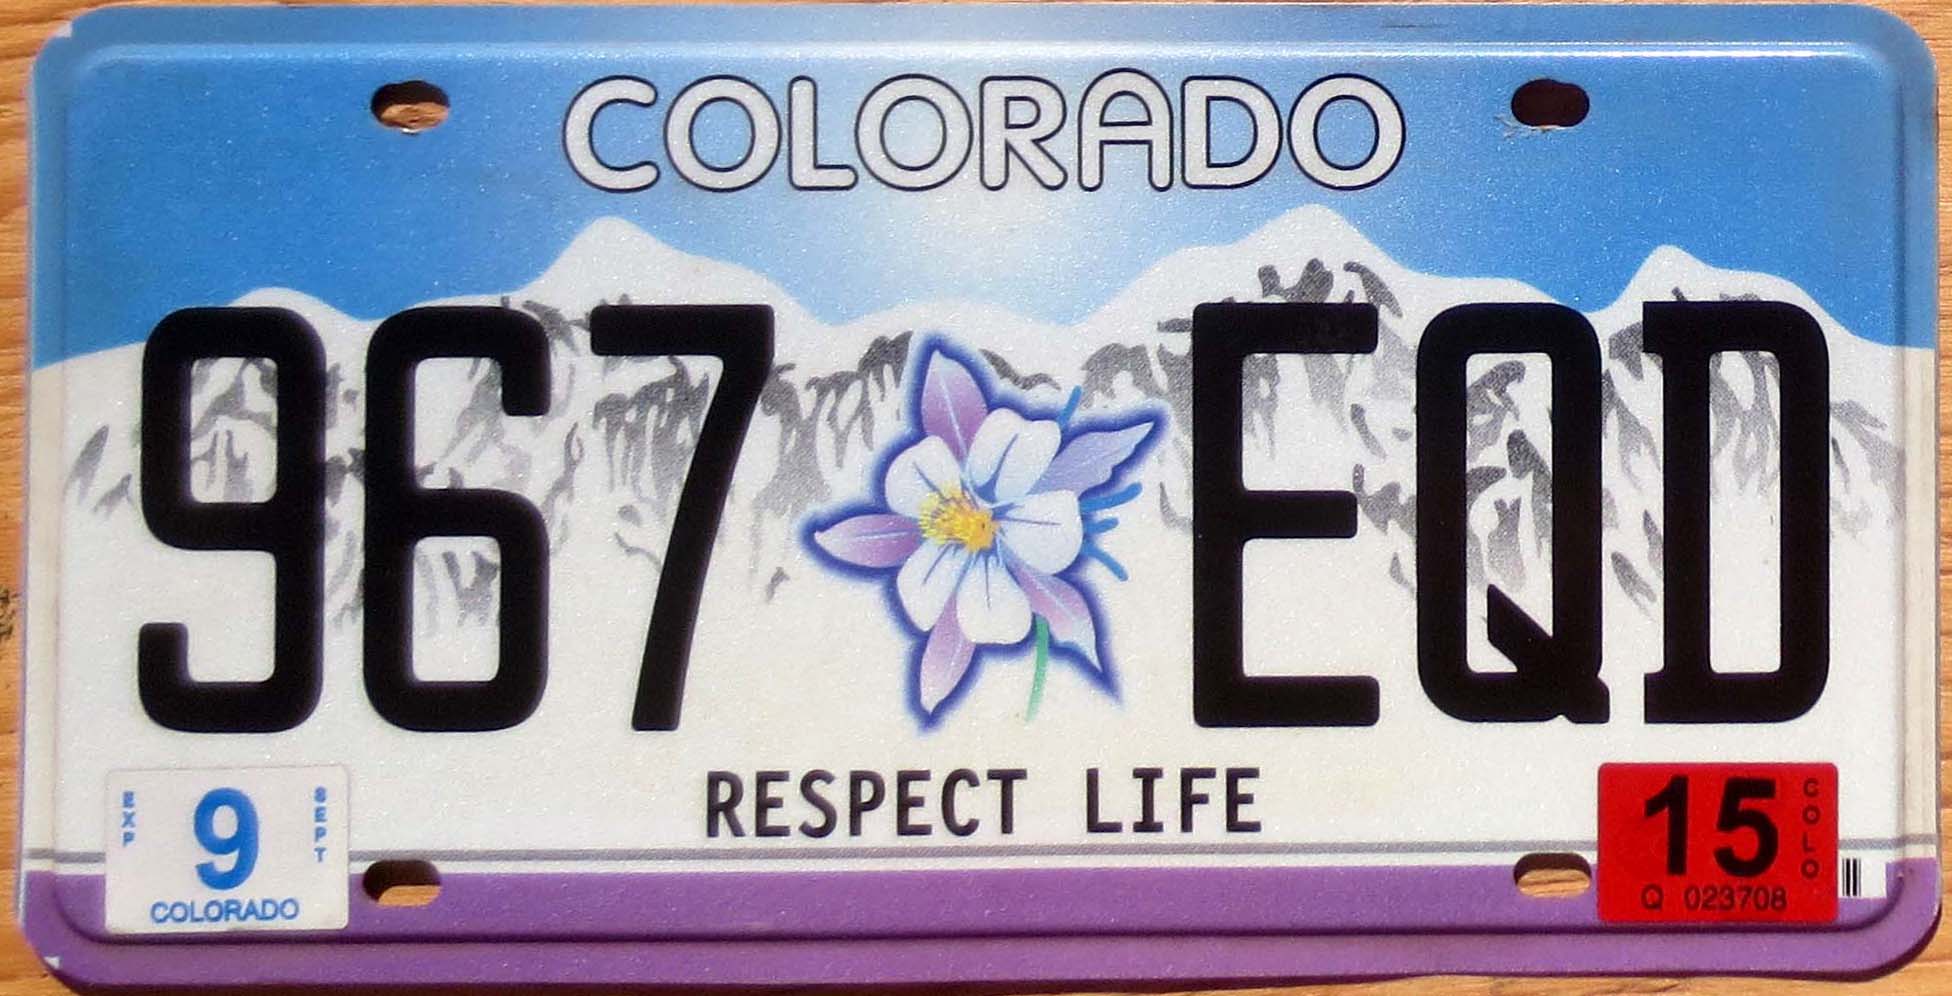 plaque immatriculation Colorado Usa license plate Respect Life tag sticker 2020 